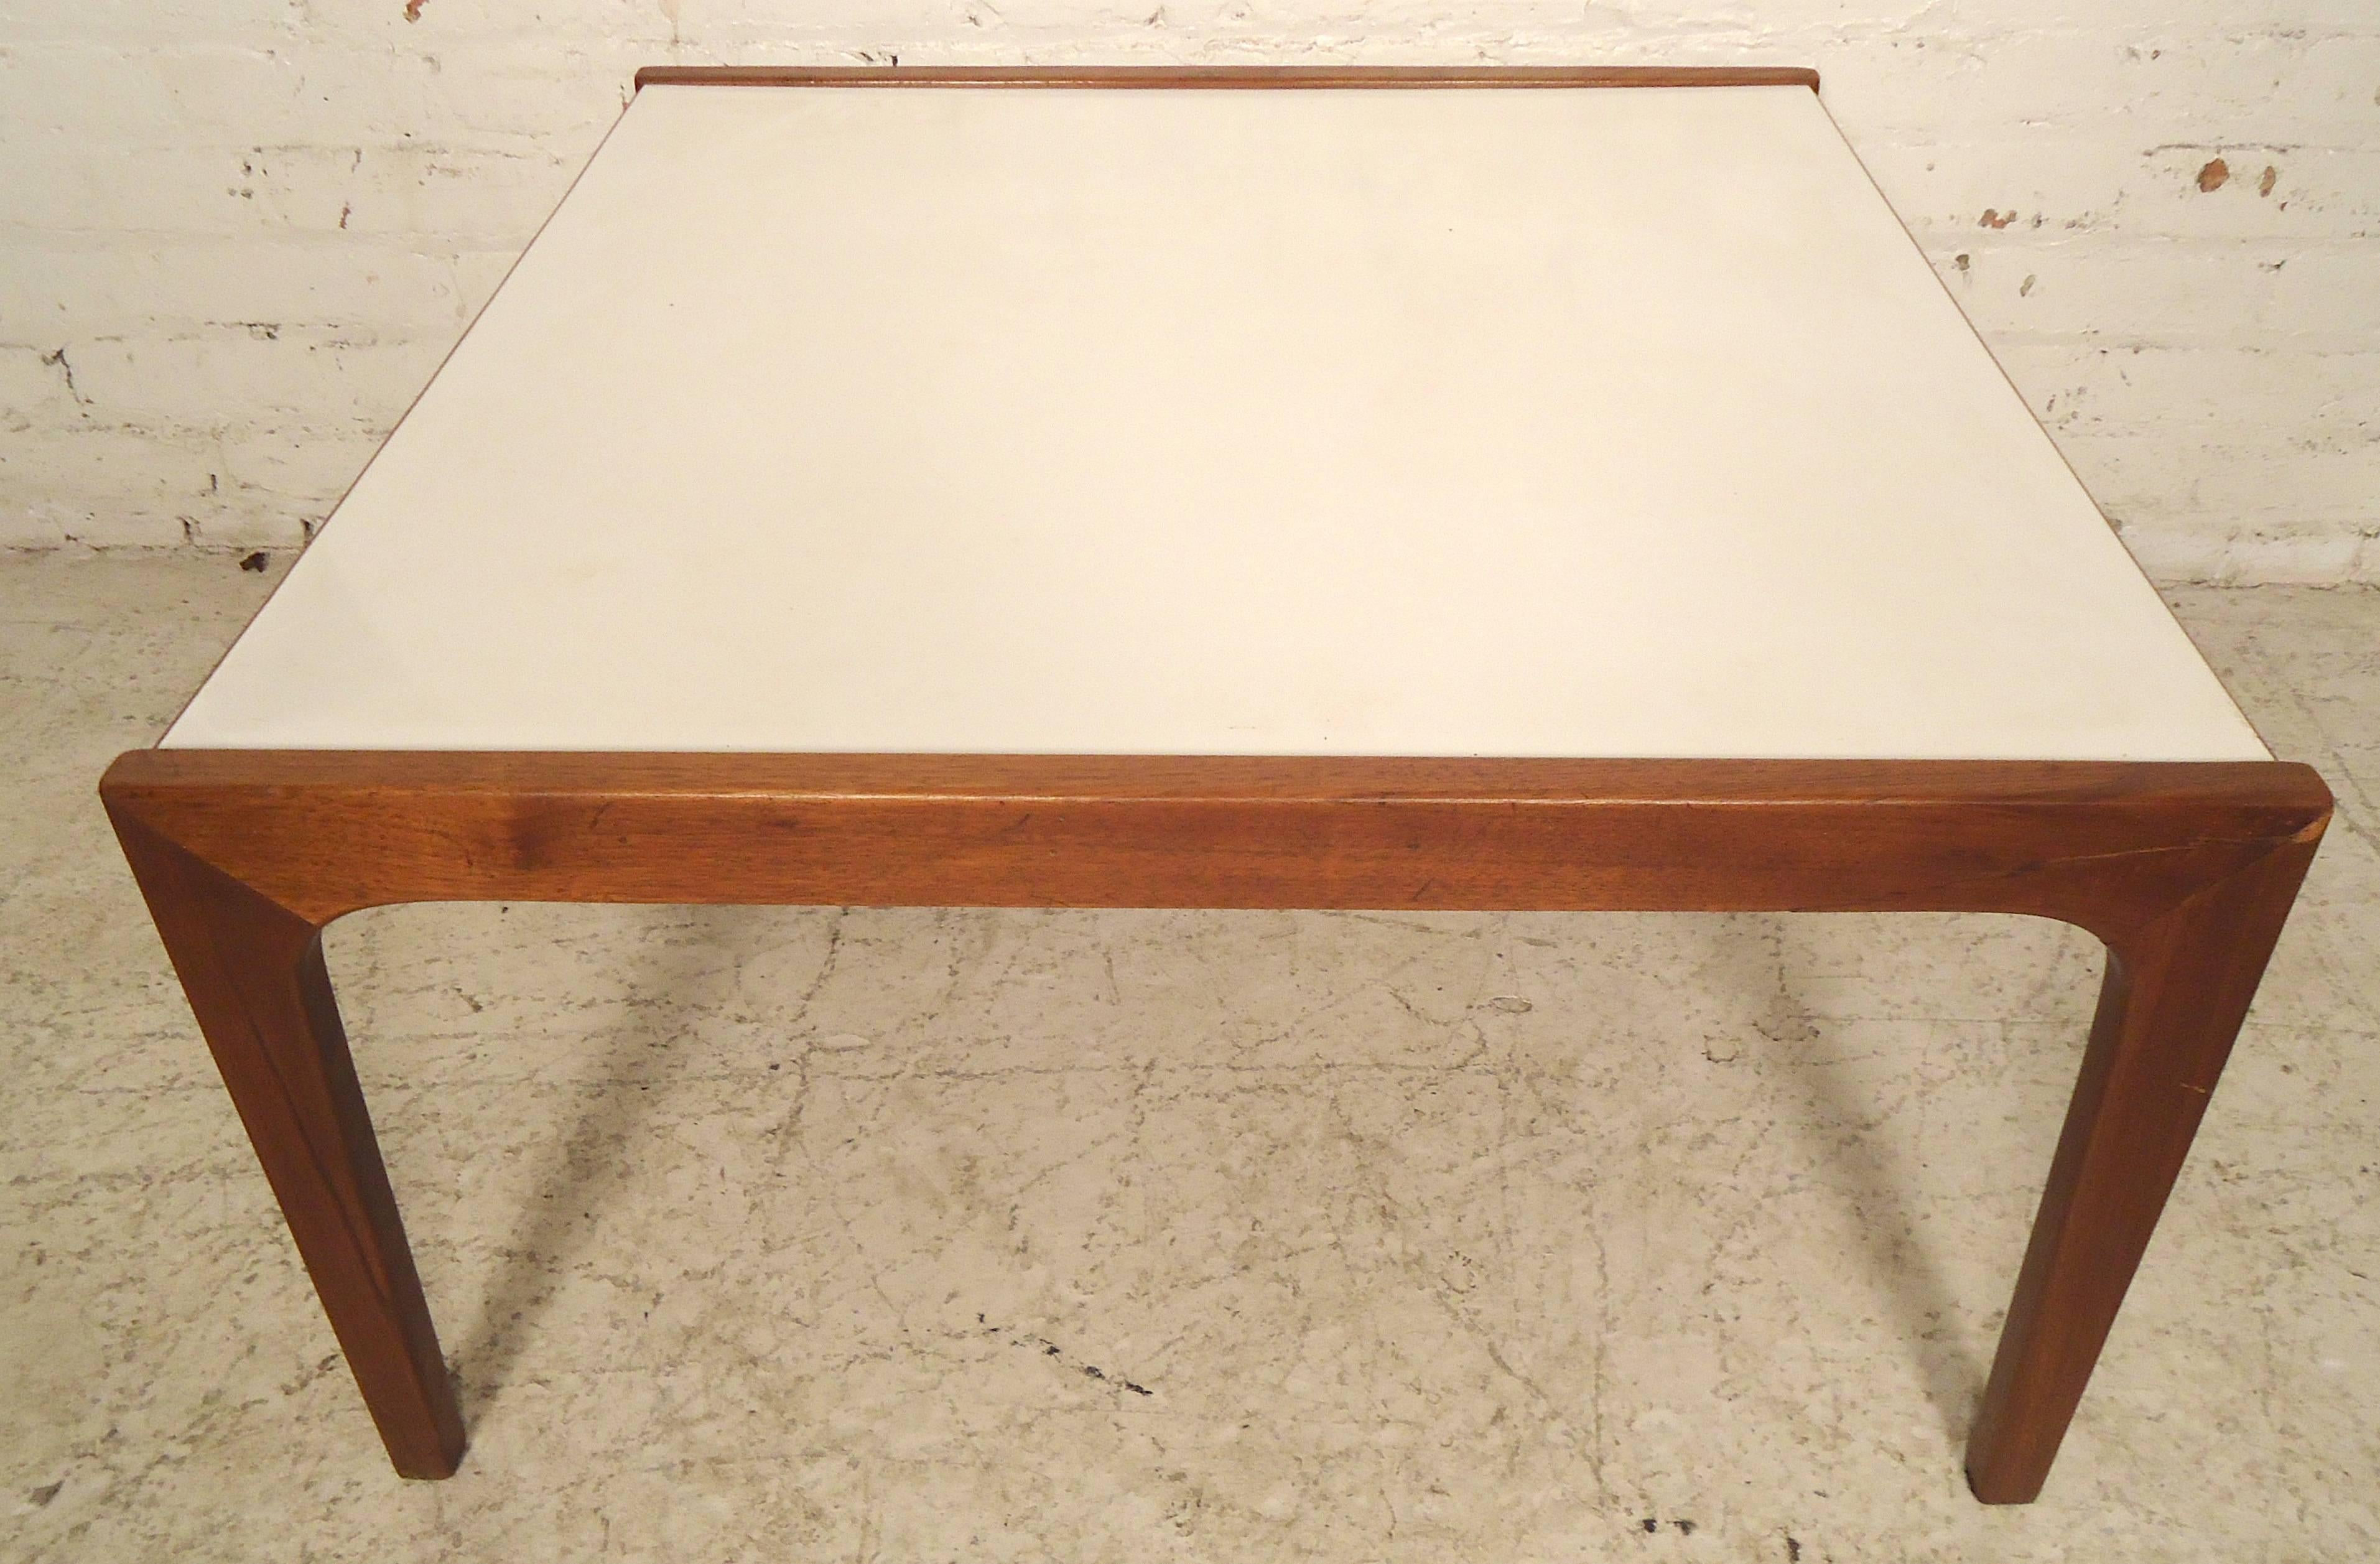 Vintage-Tisch mit Laminatplatte und geformten Beinen. Akzentuierte weiße Platte mit Rahmen aus Nussbaumholz.

(Bitte bestätigen Sie den Standort des Artikels - NY oder NJ - mit dem Händler).
 